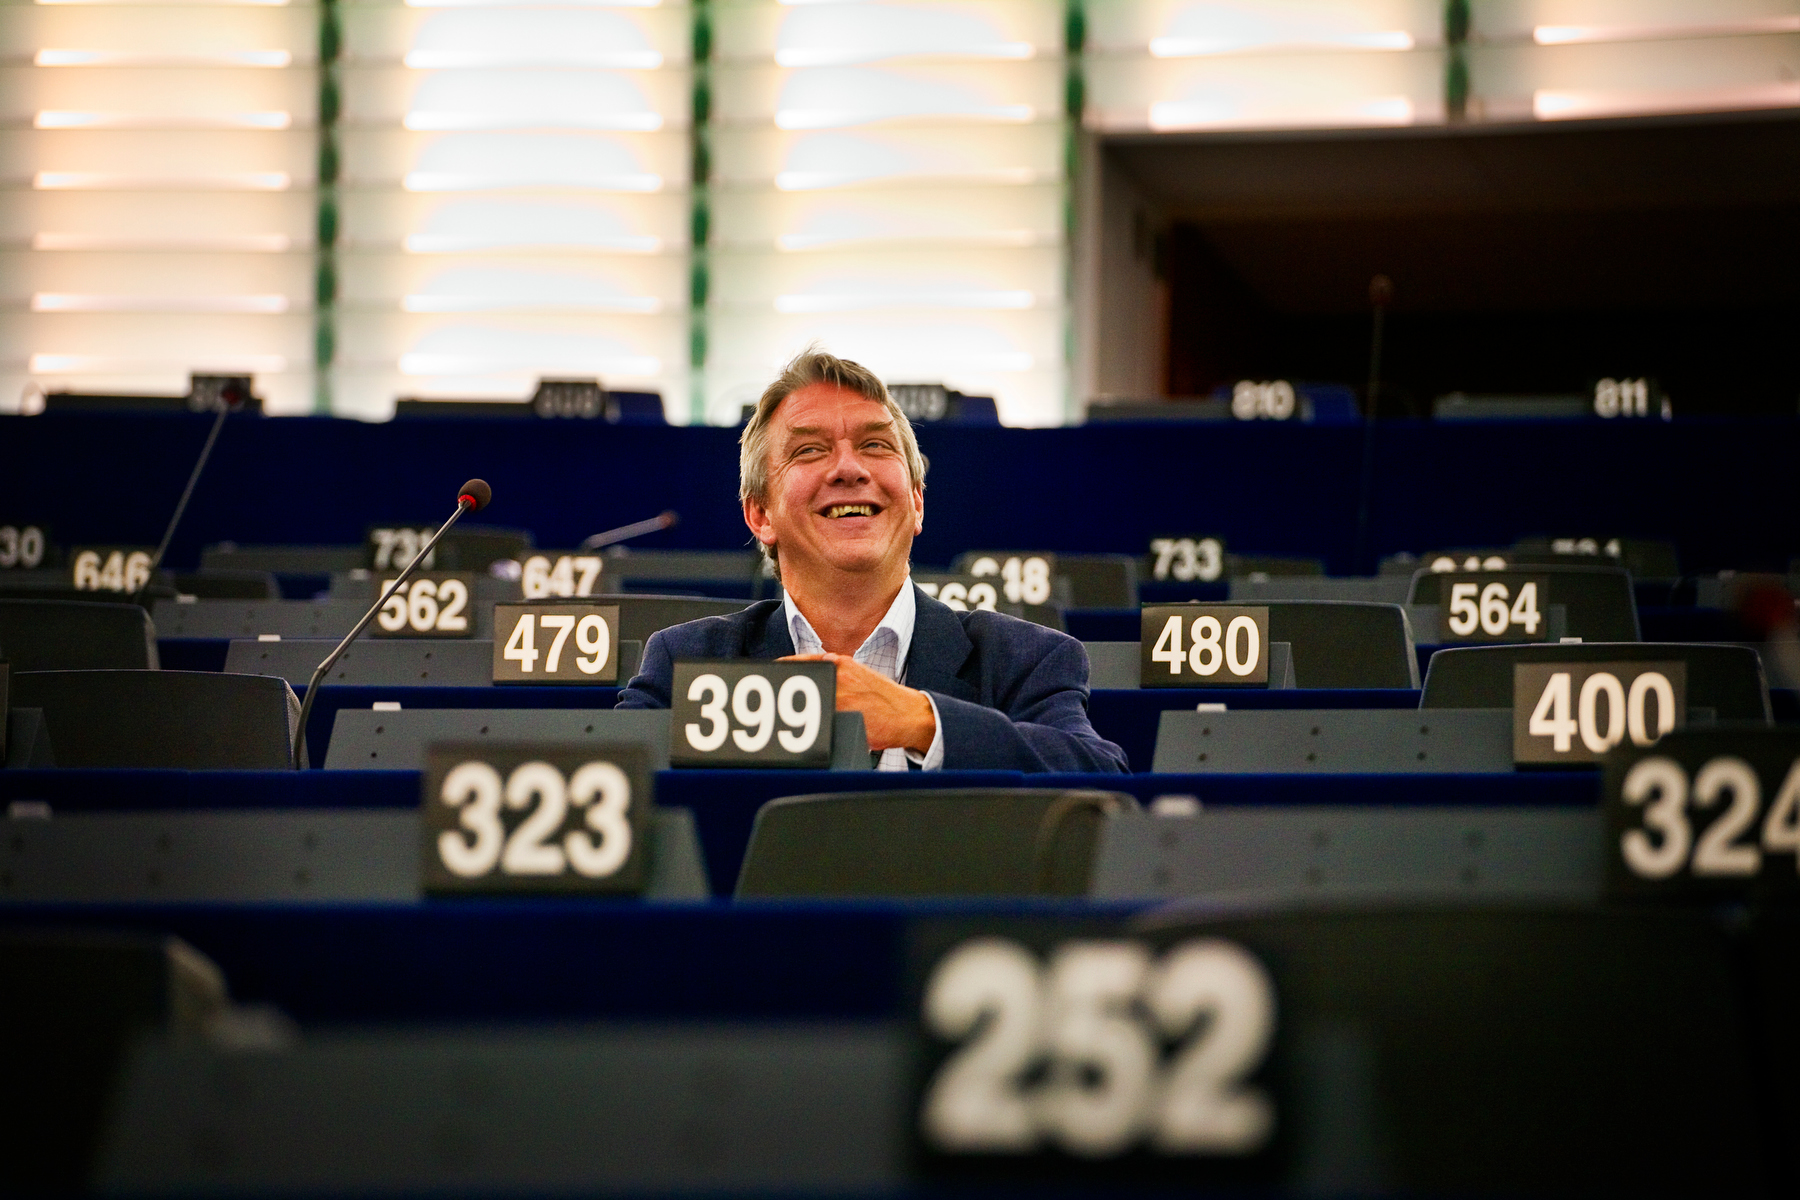 Fildelning, Christian Engström, Integritet, EU-kommissionen, Acta, Europaparlamentet, Riksdagsvalet 2010, Piratpartiet, EU